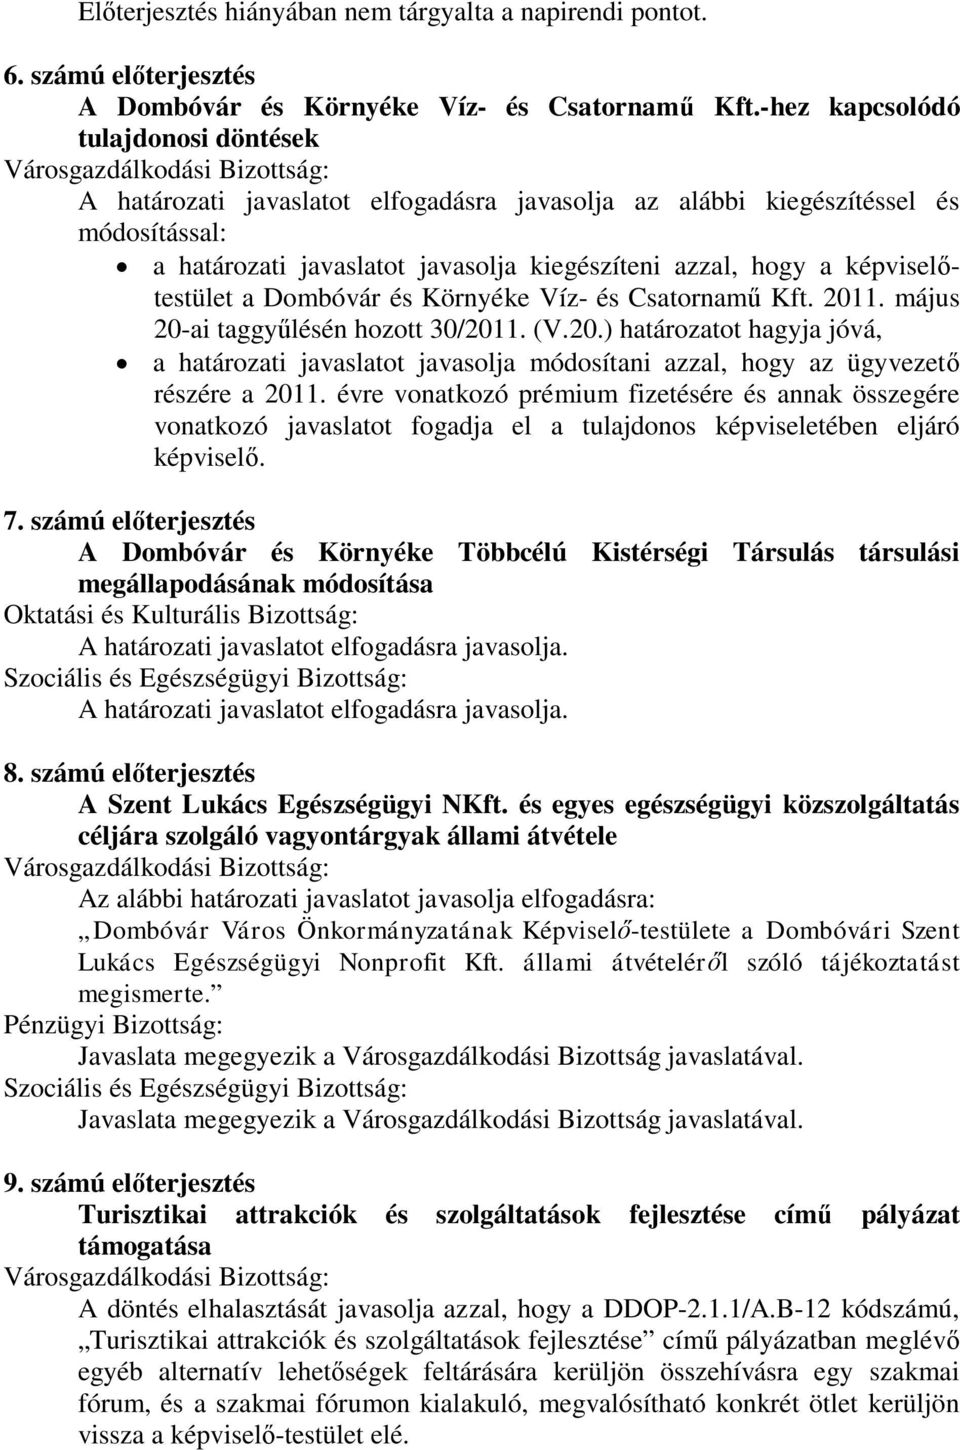 képviselőtestület a Dombóvár és Környéke Víz- és Csatornamű Kft. 2011. május 20-ai taggyűlésén hozott 30/2011. (V.20.) határozatot hagyja jóvá, a határozati javaslatot javasolja módosítani azzal, hogy az ügyvezető részére a 2011.